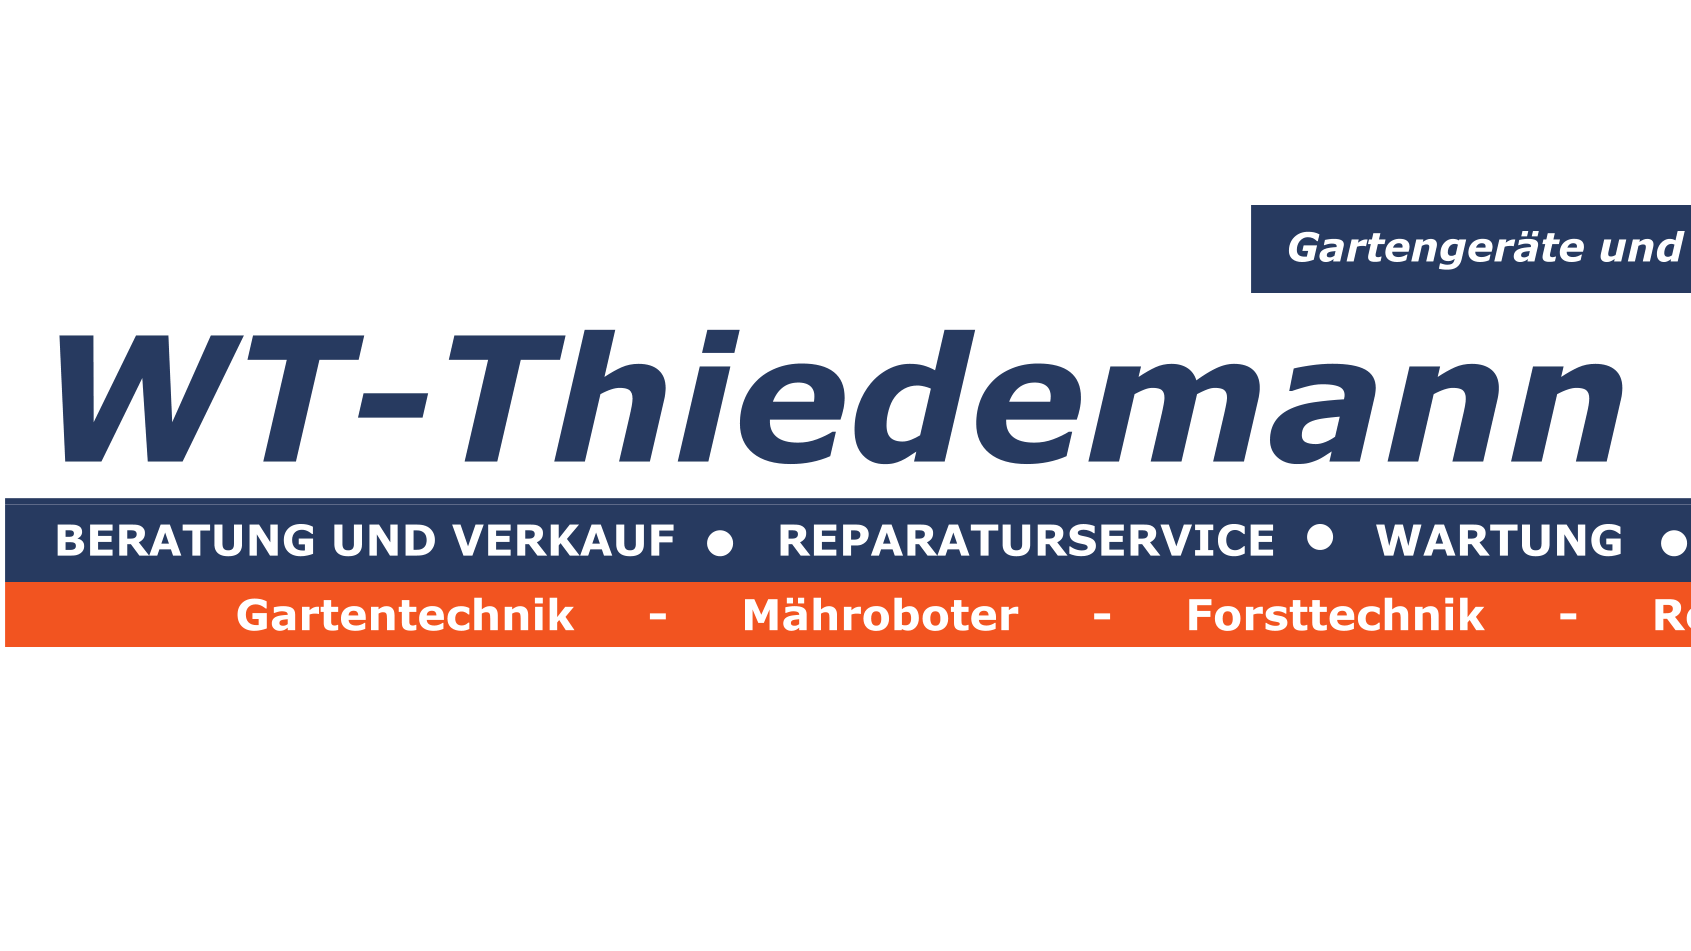 Kundenfoto 1 Die Gartengeräteprofis - WT-Thiedemann GmbH - Gartengeräte & Reparaturwerkstatt